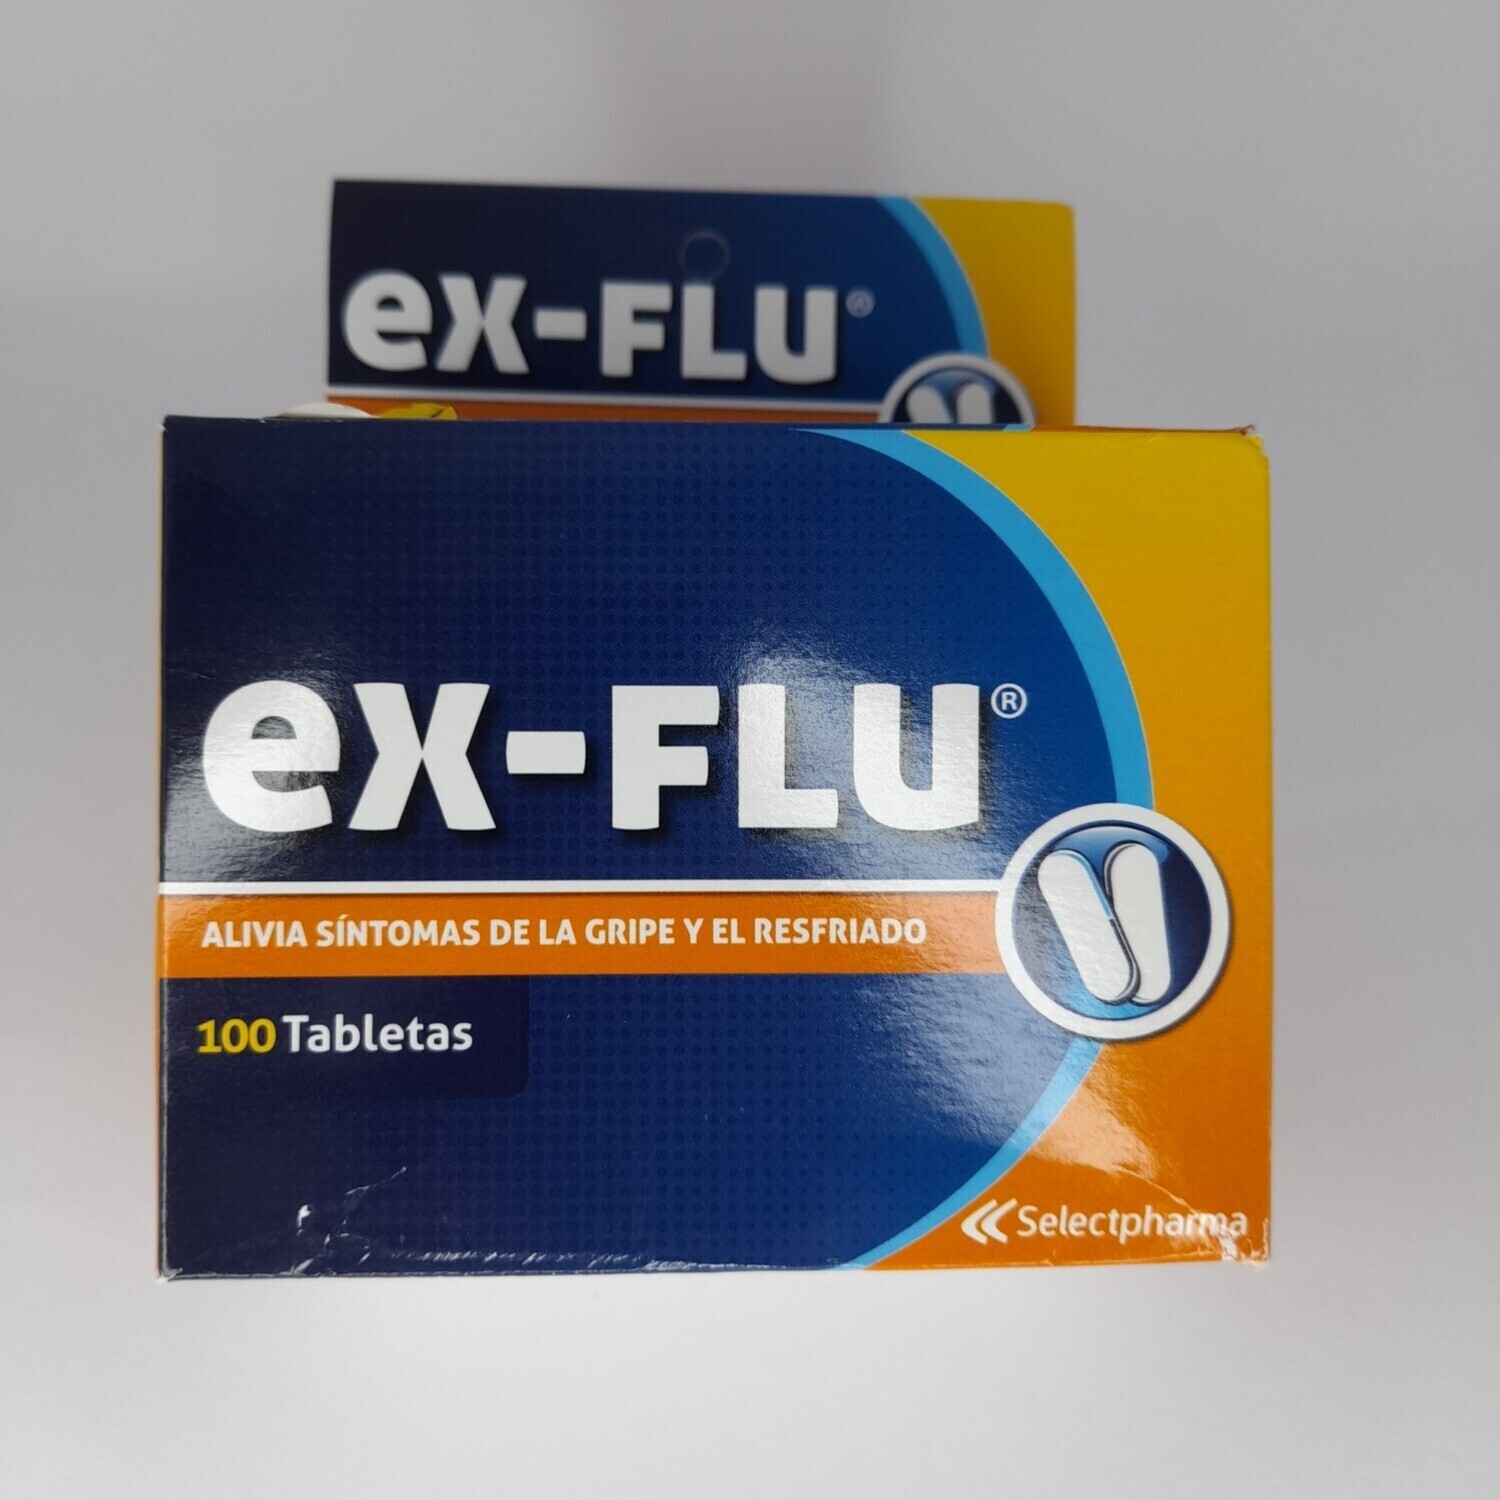 EX FLU ANTIGRIPAL CX 1 tab 